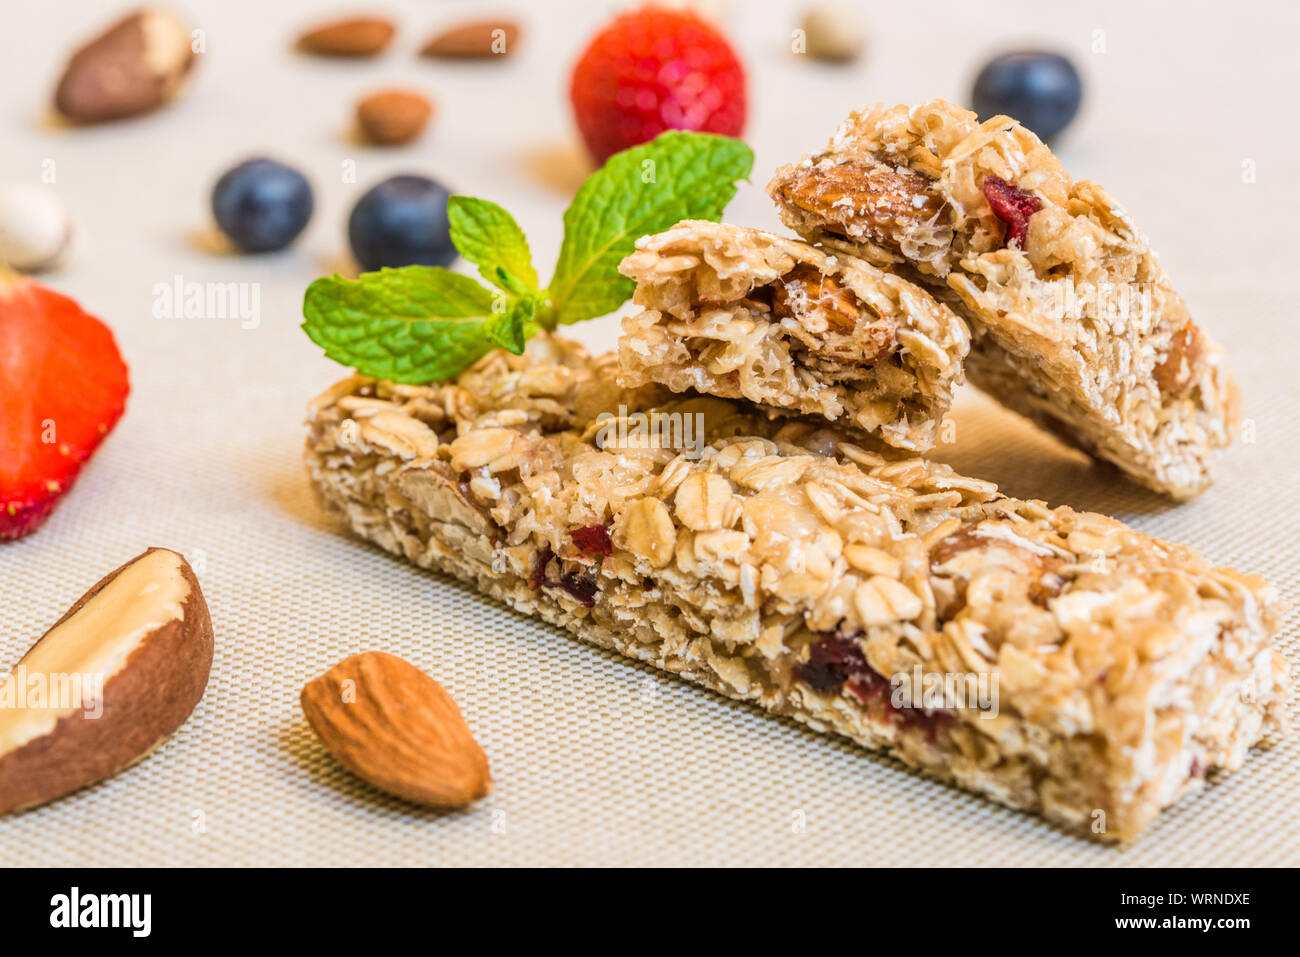 Cereali granola bar contro uno sfondo bianco. Concetto di cibo sano e mangiare. Foto Stock